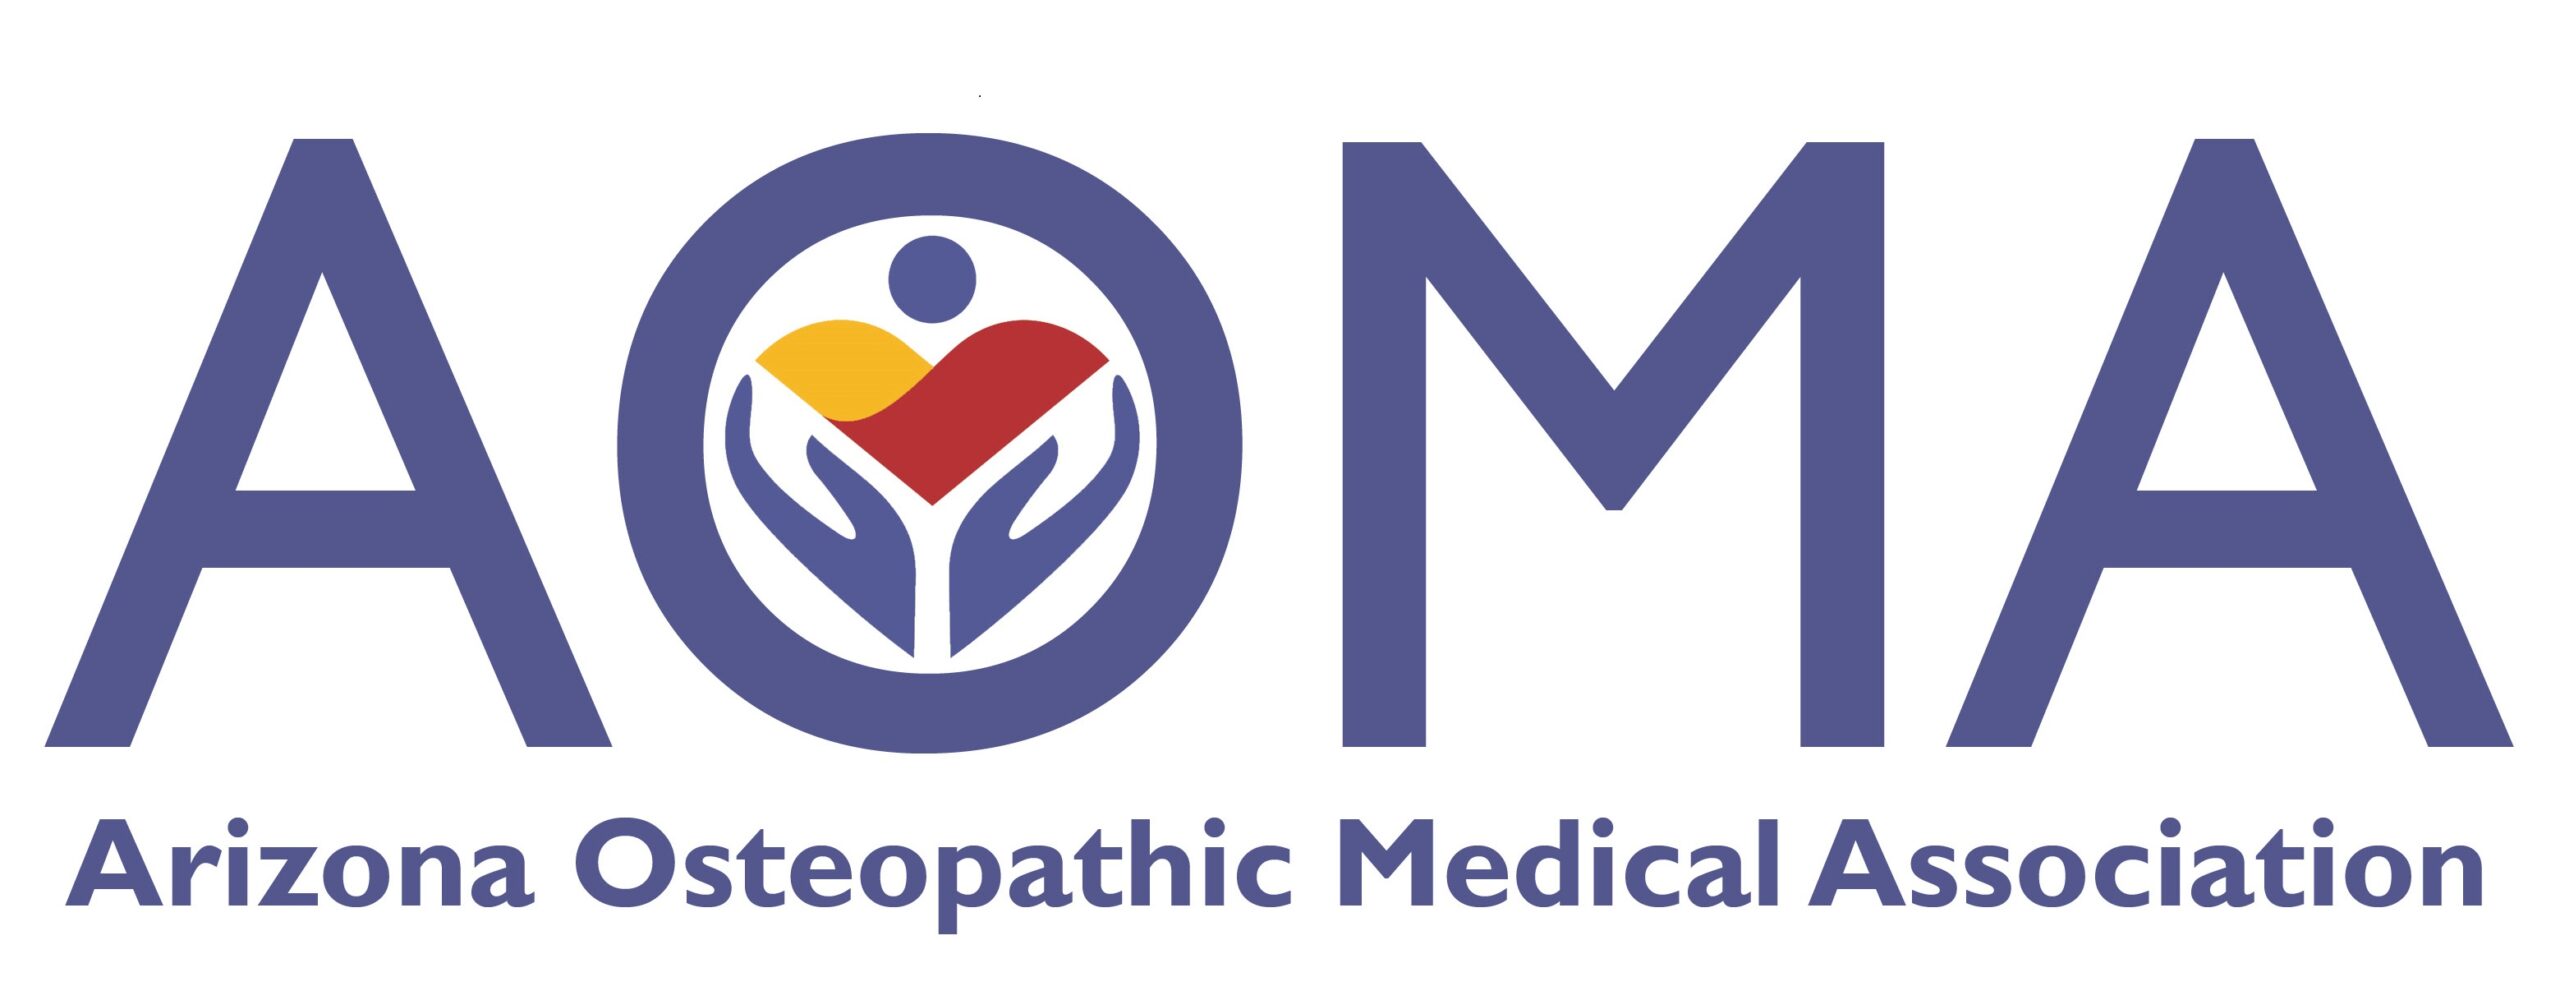 Arizona Osteopathic Medical Association's Logo